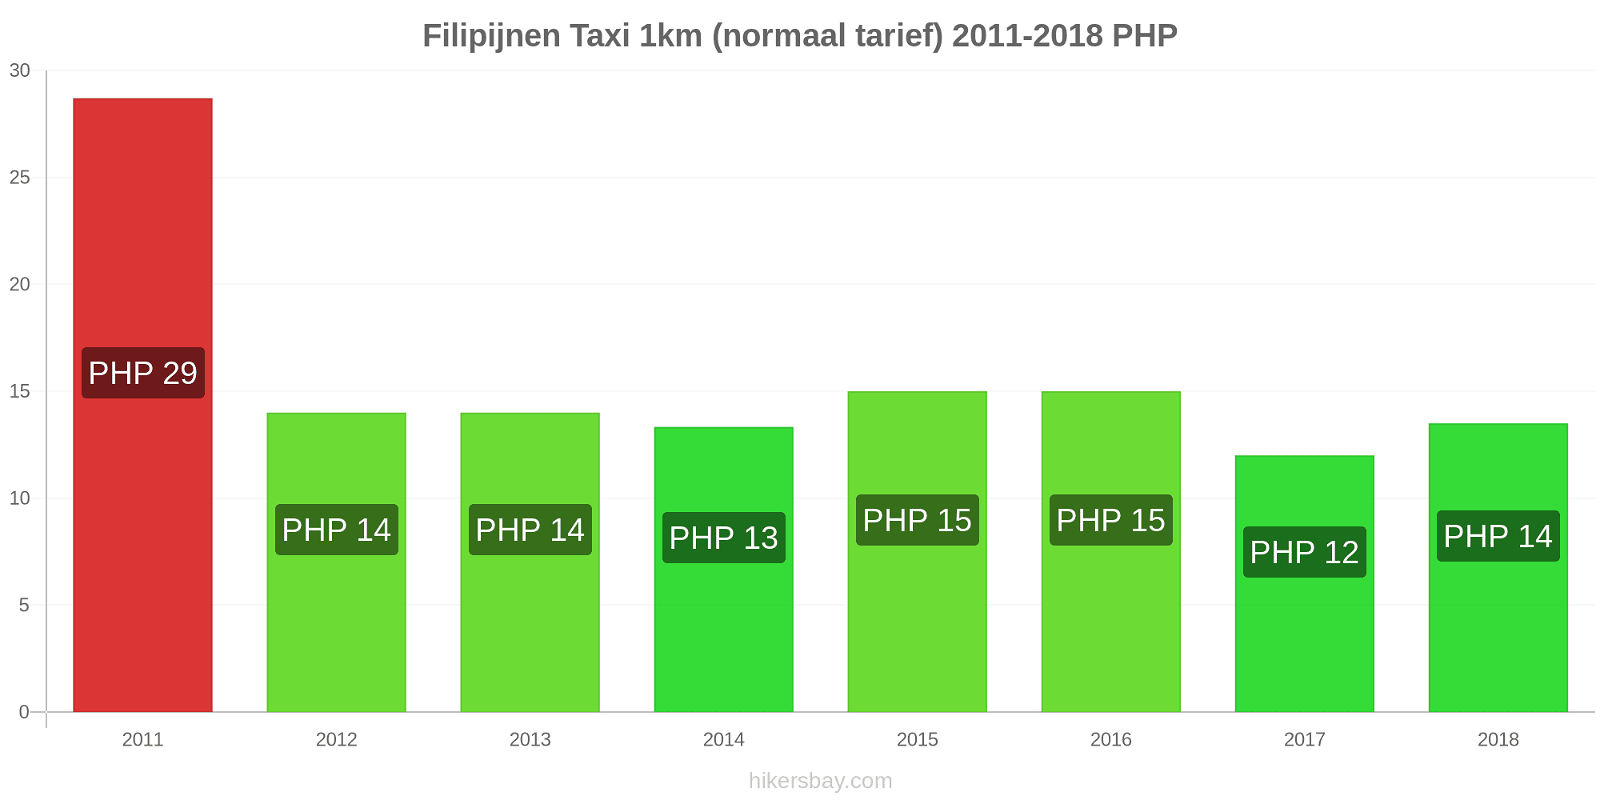 Filipijnen prijswijzigingen Taxi 1km (normaal tarief) hikersbay.com